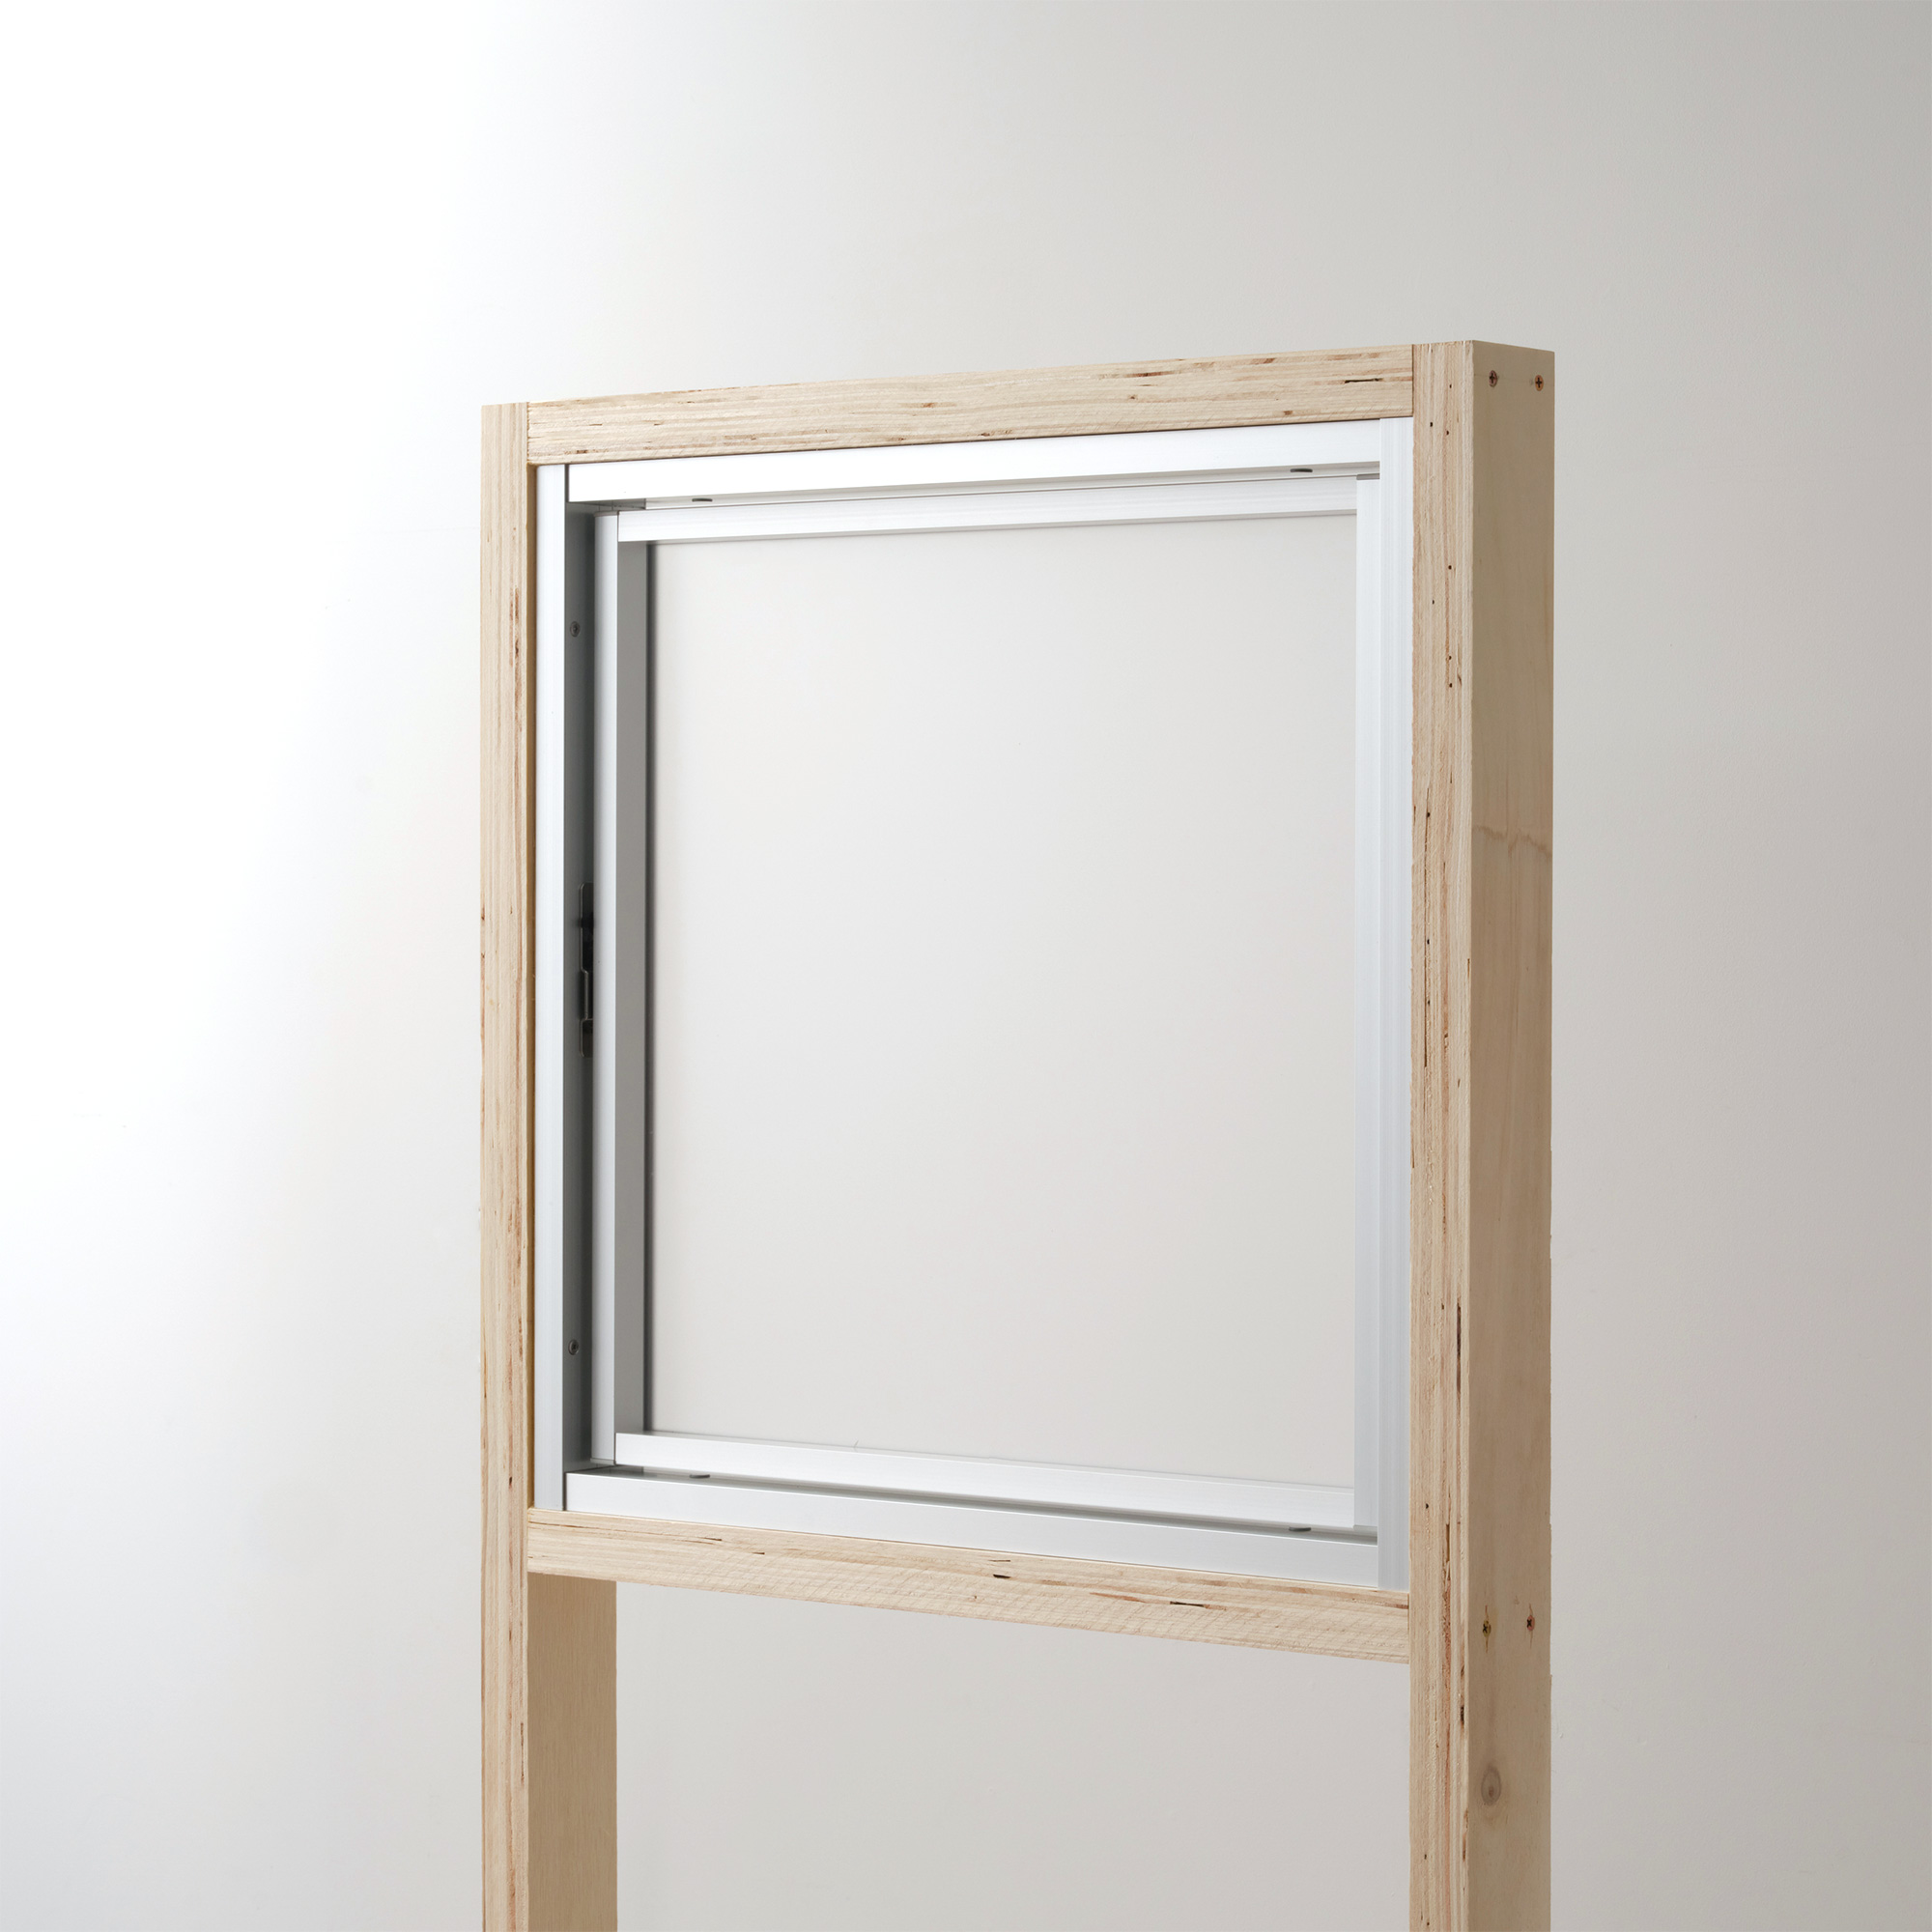 室内アルミサッシ 回転窓 シルバー 樹脂パネル DW-DR013-08-G201 回転窓 W500 H500 マット樹脂パネル